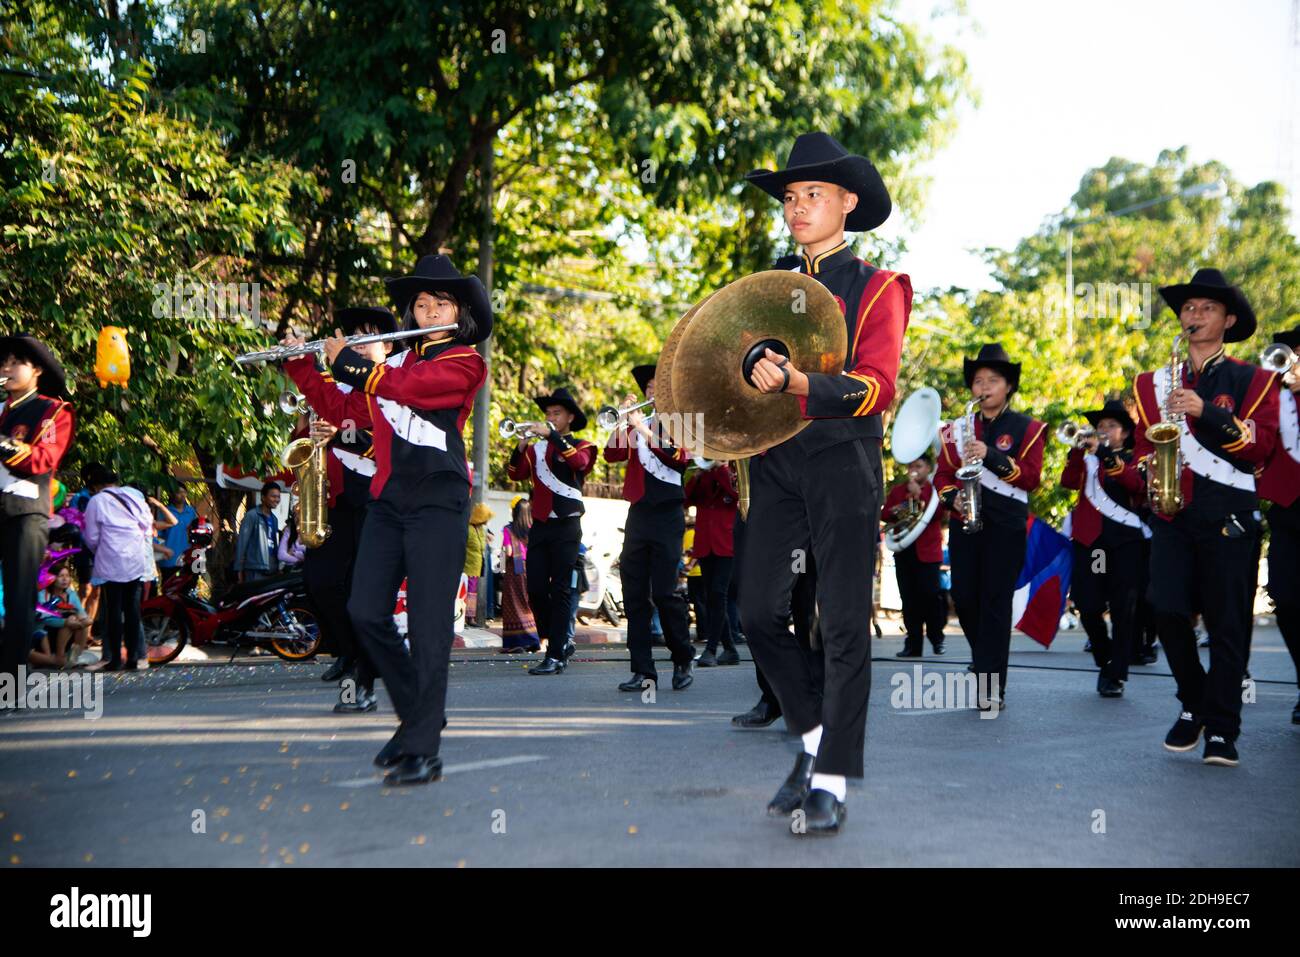 Sfilata di Marching Band mentre si esibisce per strada, i partecipanti prendono parte alla celebrazione della tradizione internazionale di Pook Xiao. Foto Stock